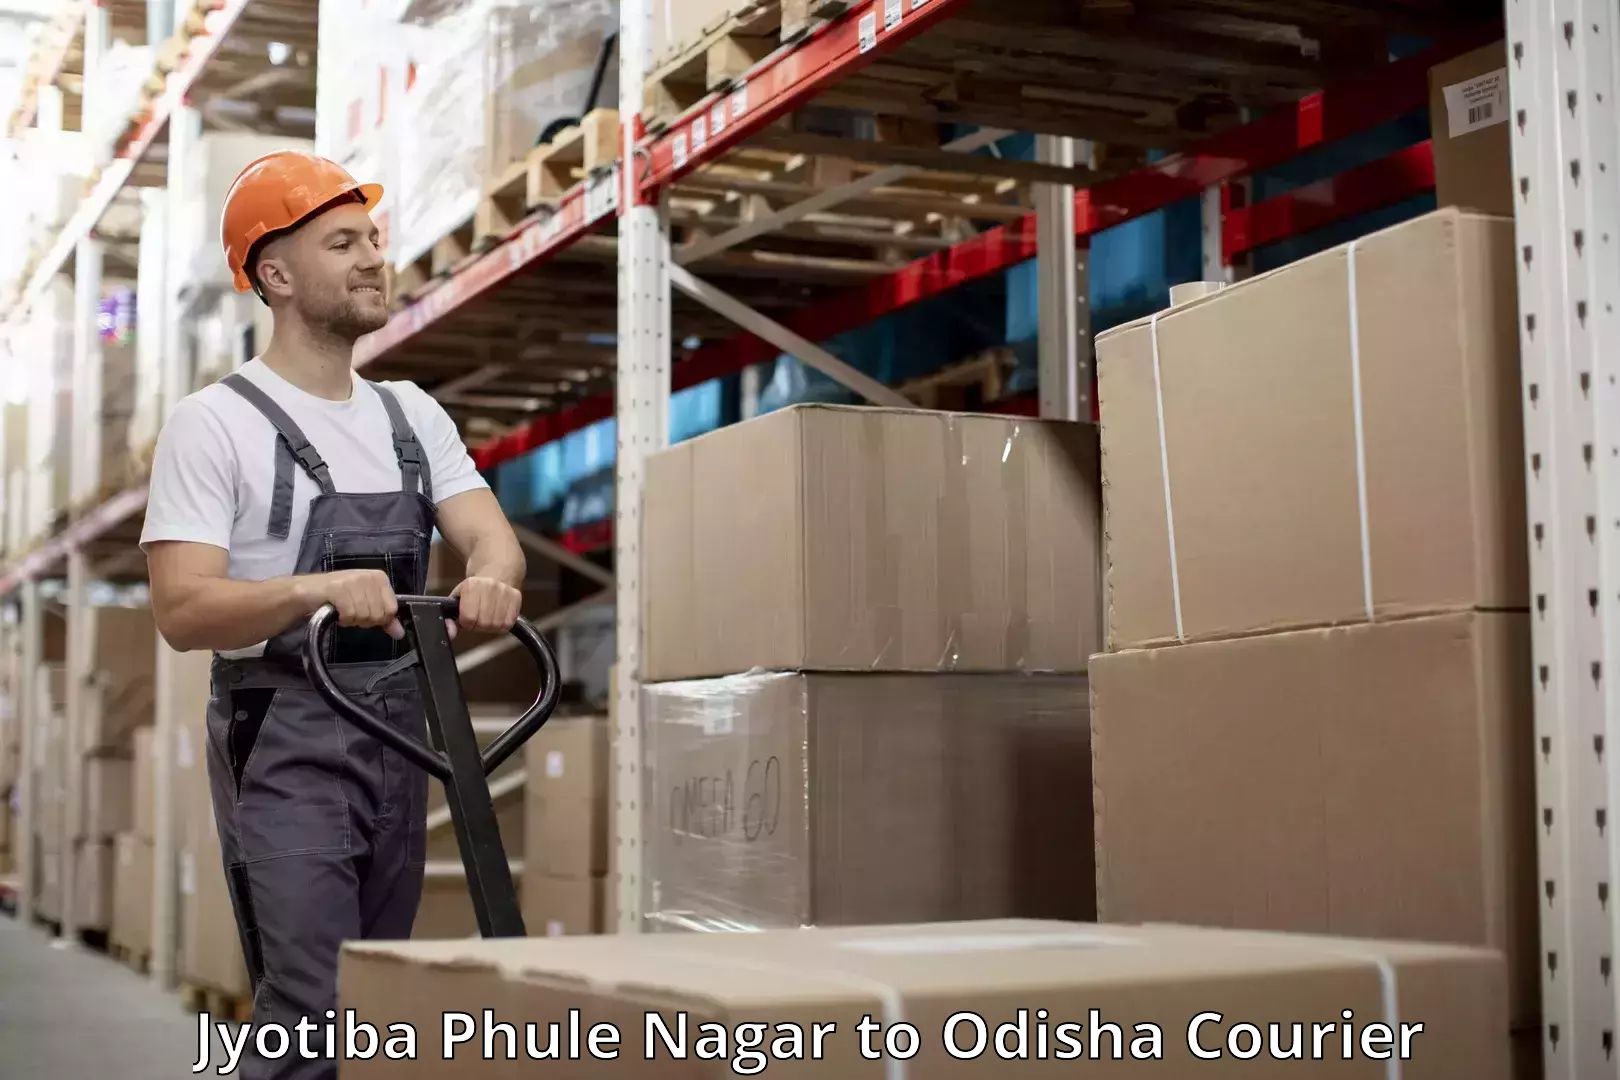 Luggage delivery estimate Jyotiba Phule Nagar to Odisha